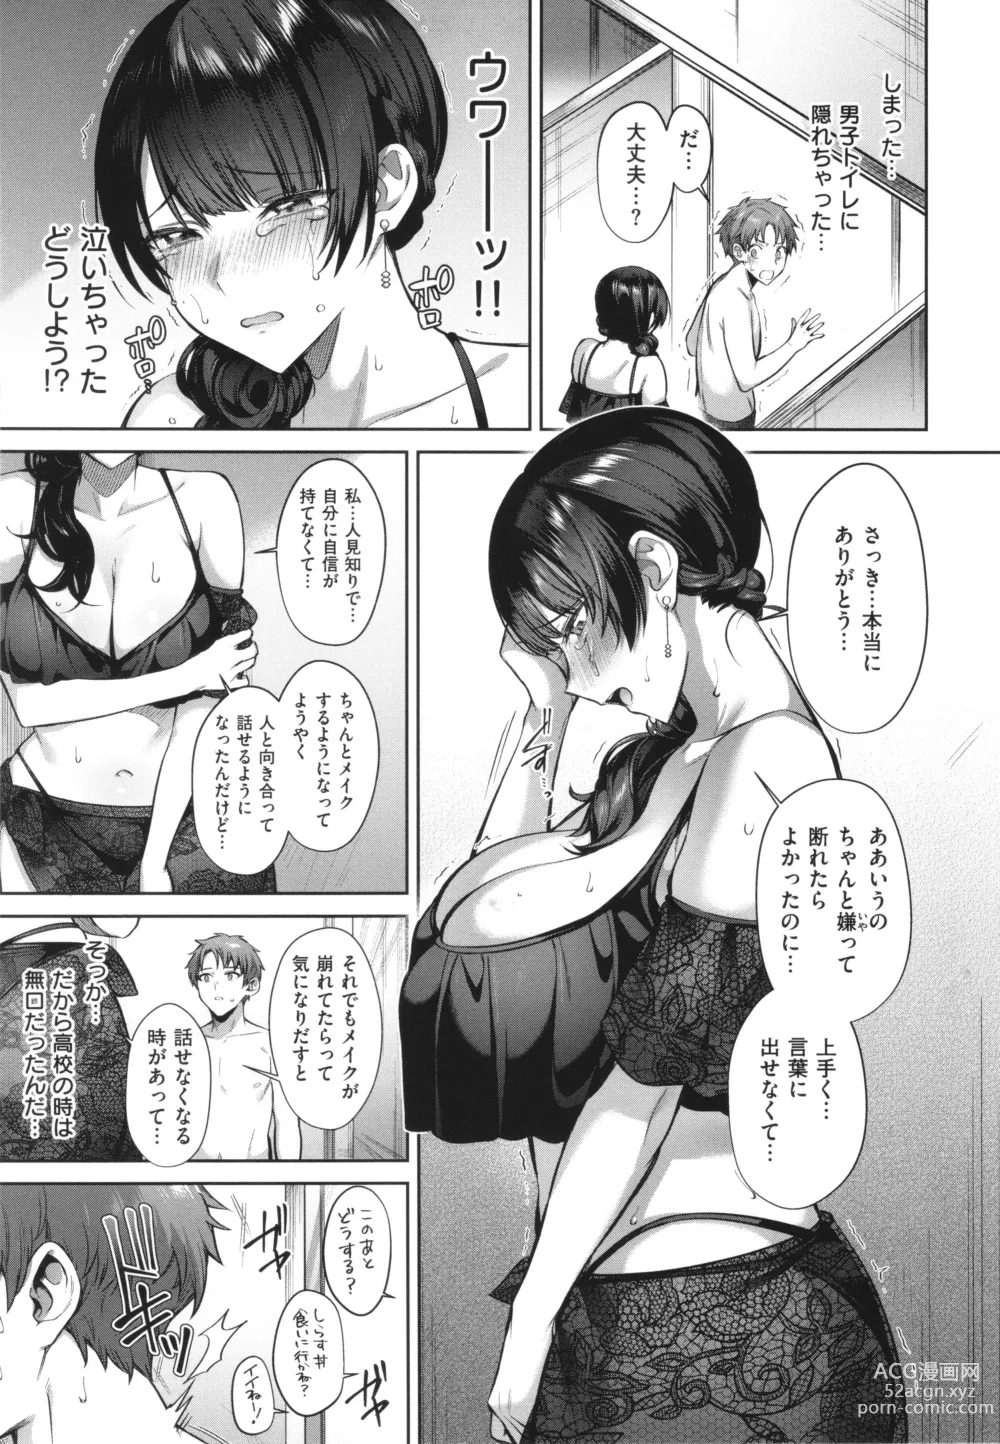 Page 11 of manga Tsubomi Zakari